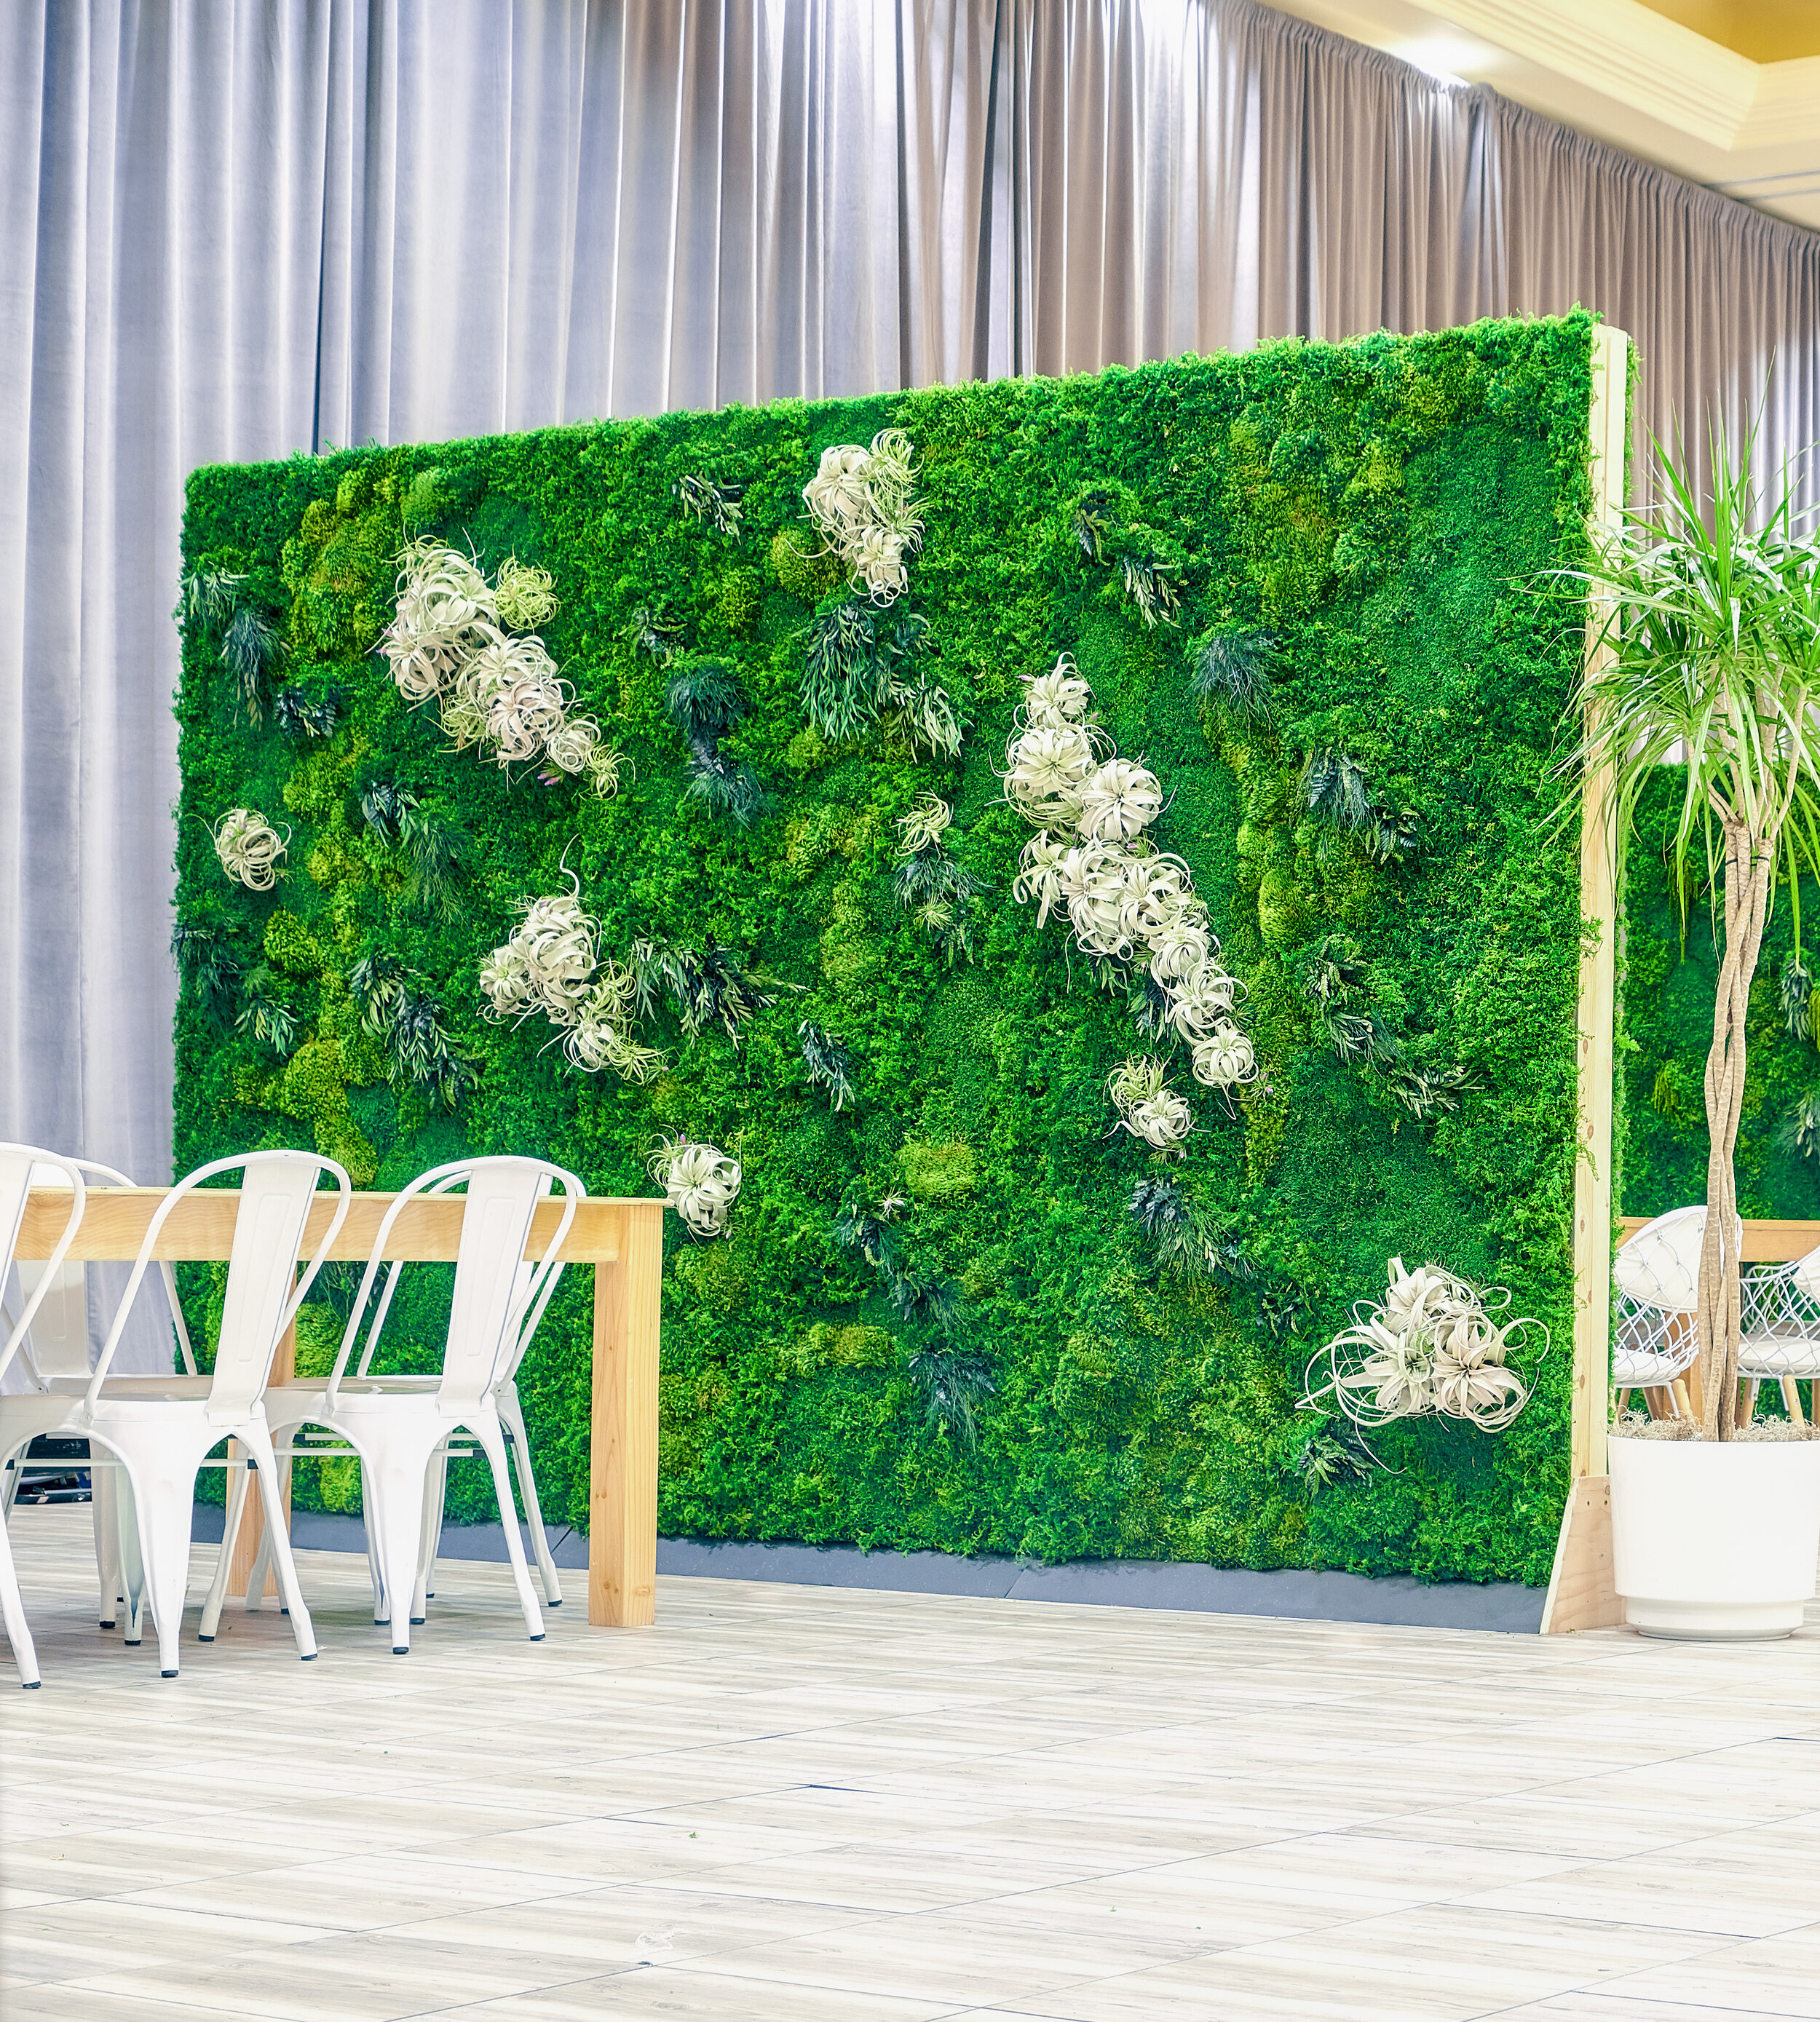 Moss Art & Plant Walls – Oakland Green Interiors